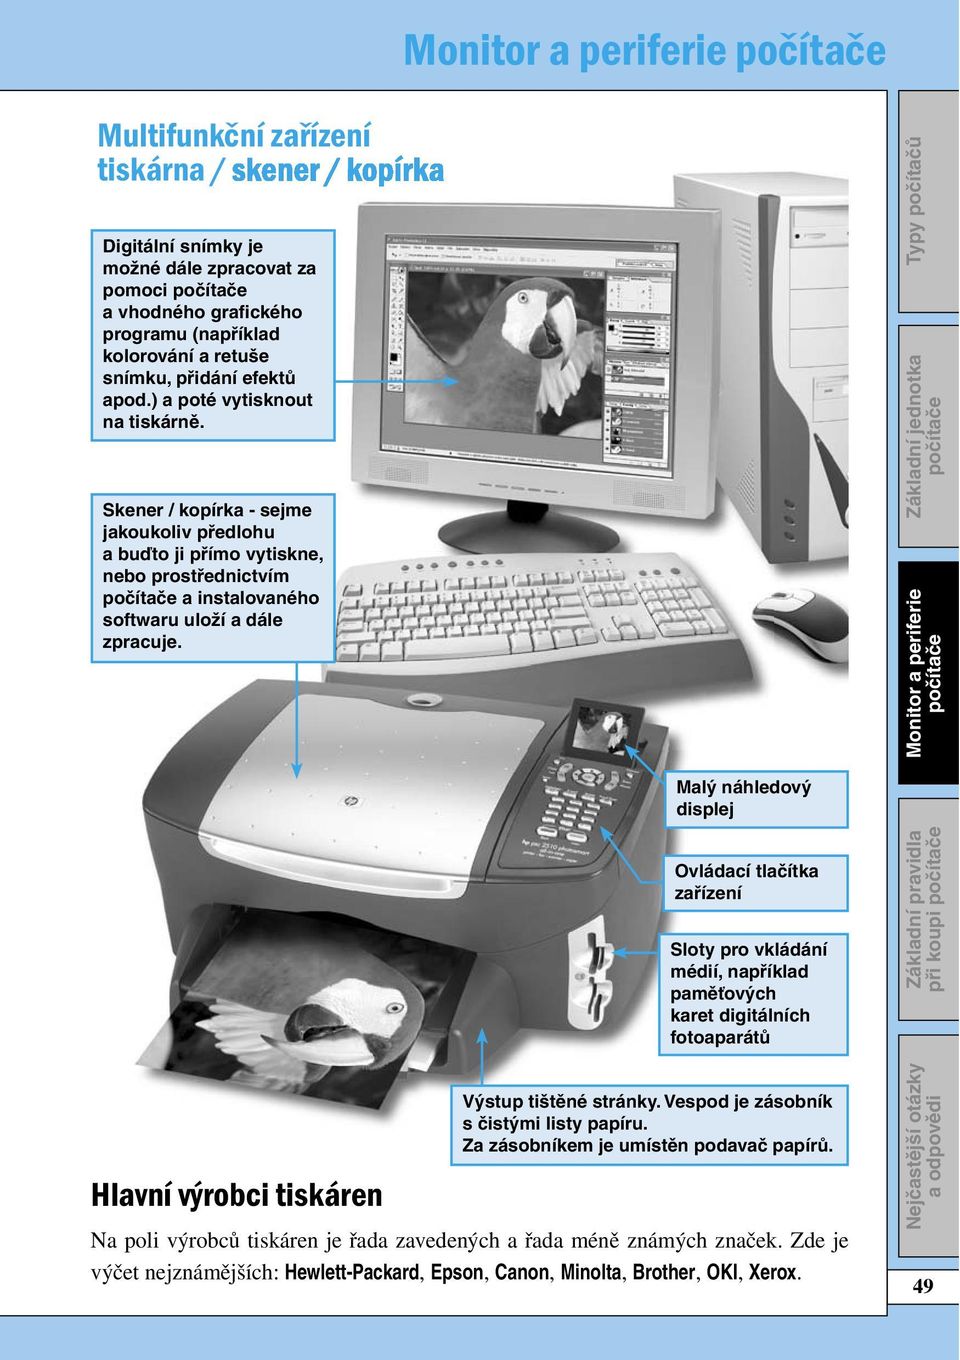 Malý náhledový displej Ovládací tlačítka zařízení Sloty pro vkládání médií, například paměťových karet digitálních fotoaparátů při koupi Hlavní výrobci tiskáren Výstup tištěné stránky.